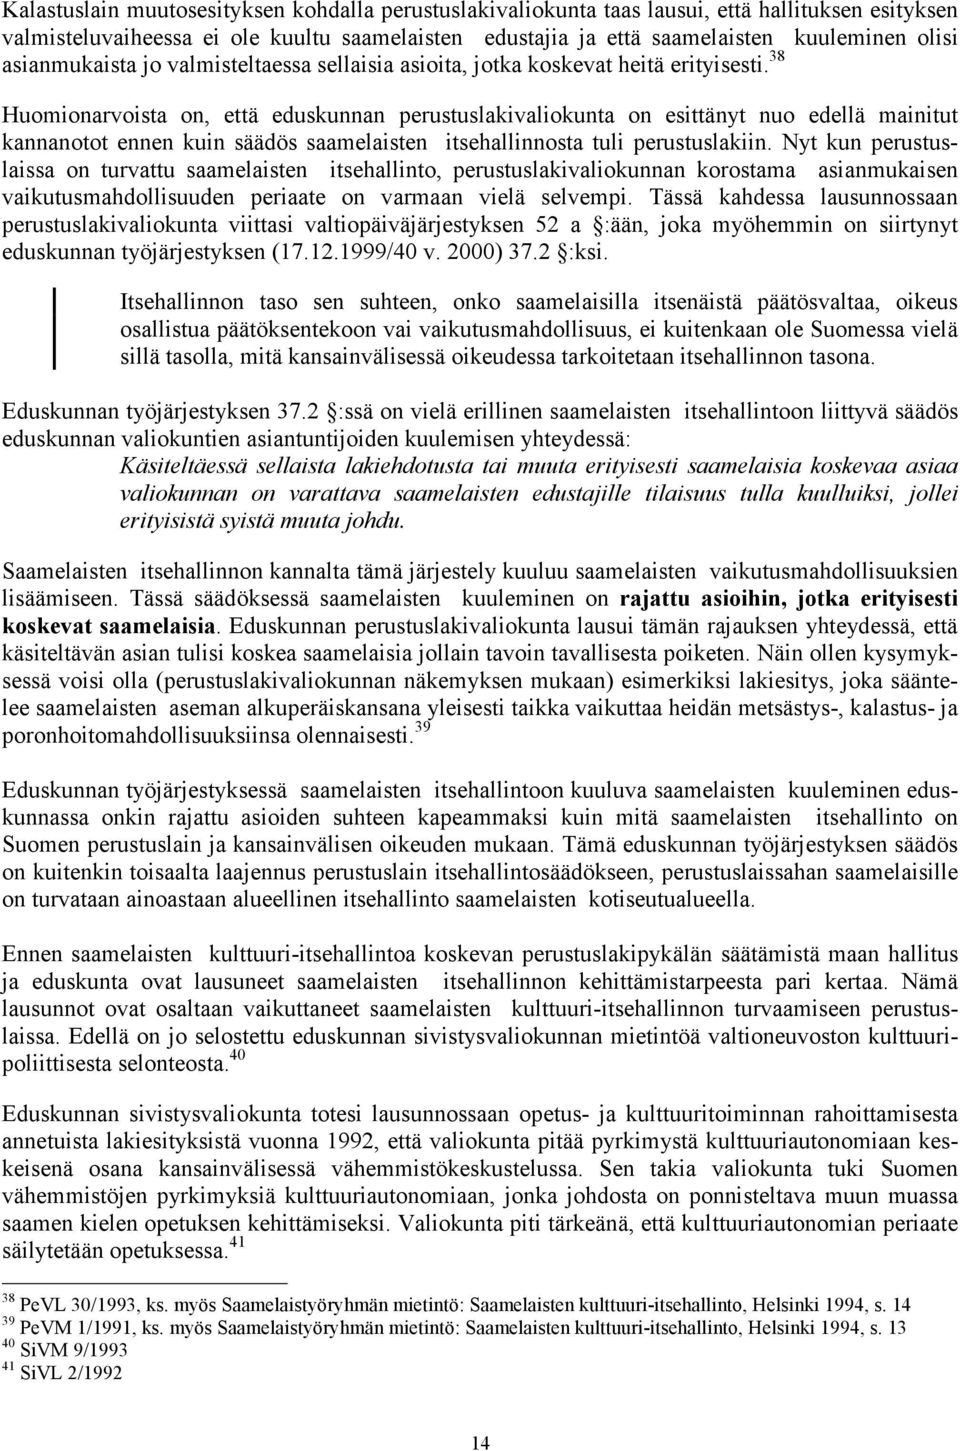 38 Huomionarvoista on, että eduskunnan perustuslakivaliokunta on esittänyt nuo edellä mainitut kannanotot ennen kuin säädös saamelaisten itsehallinnosta tuli perustuslakiin.